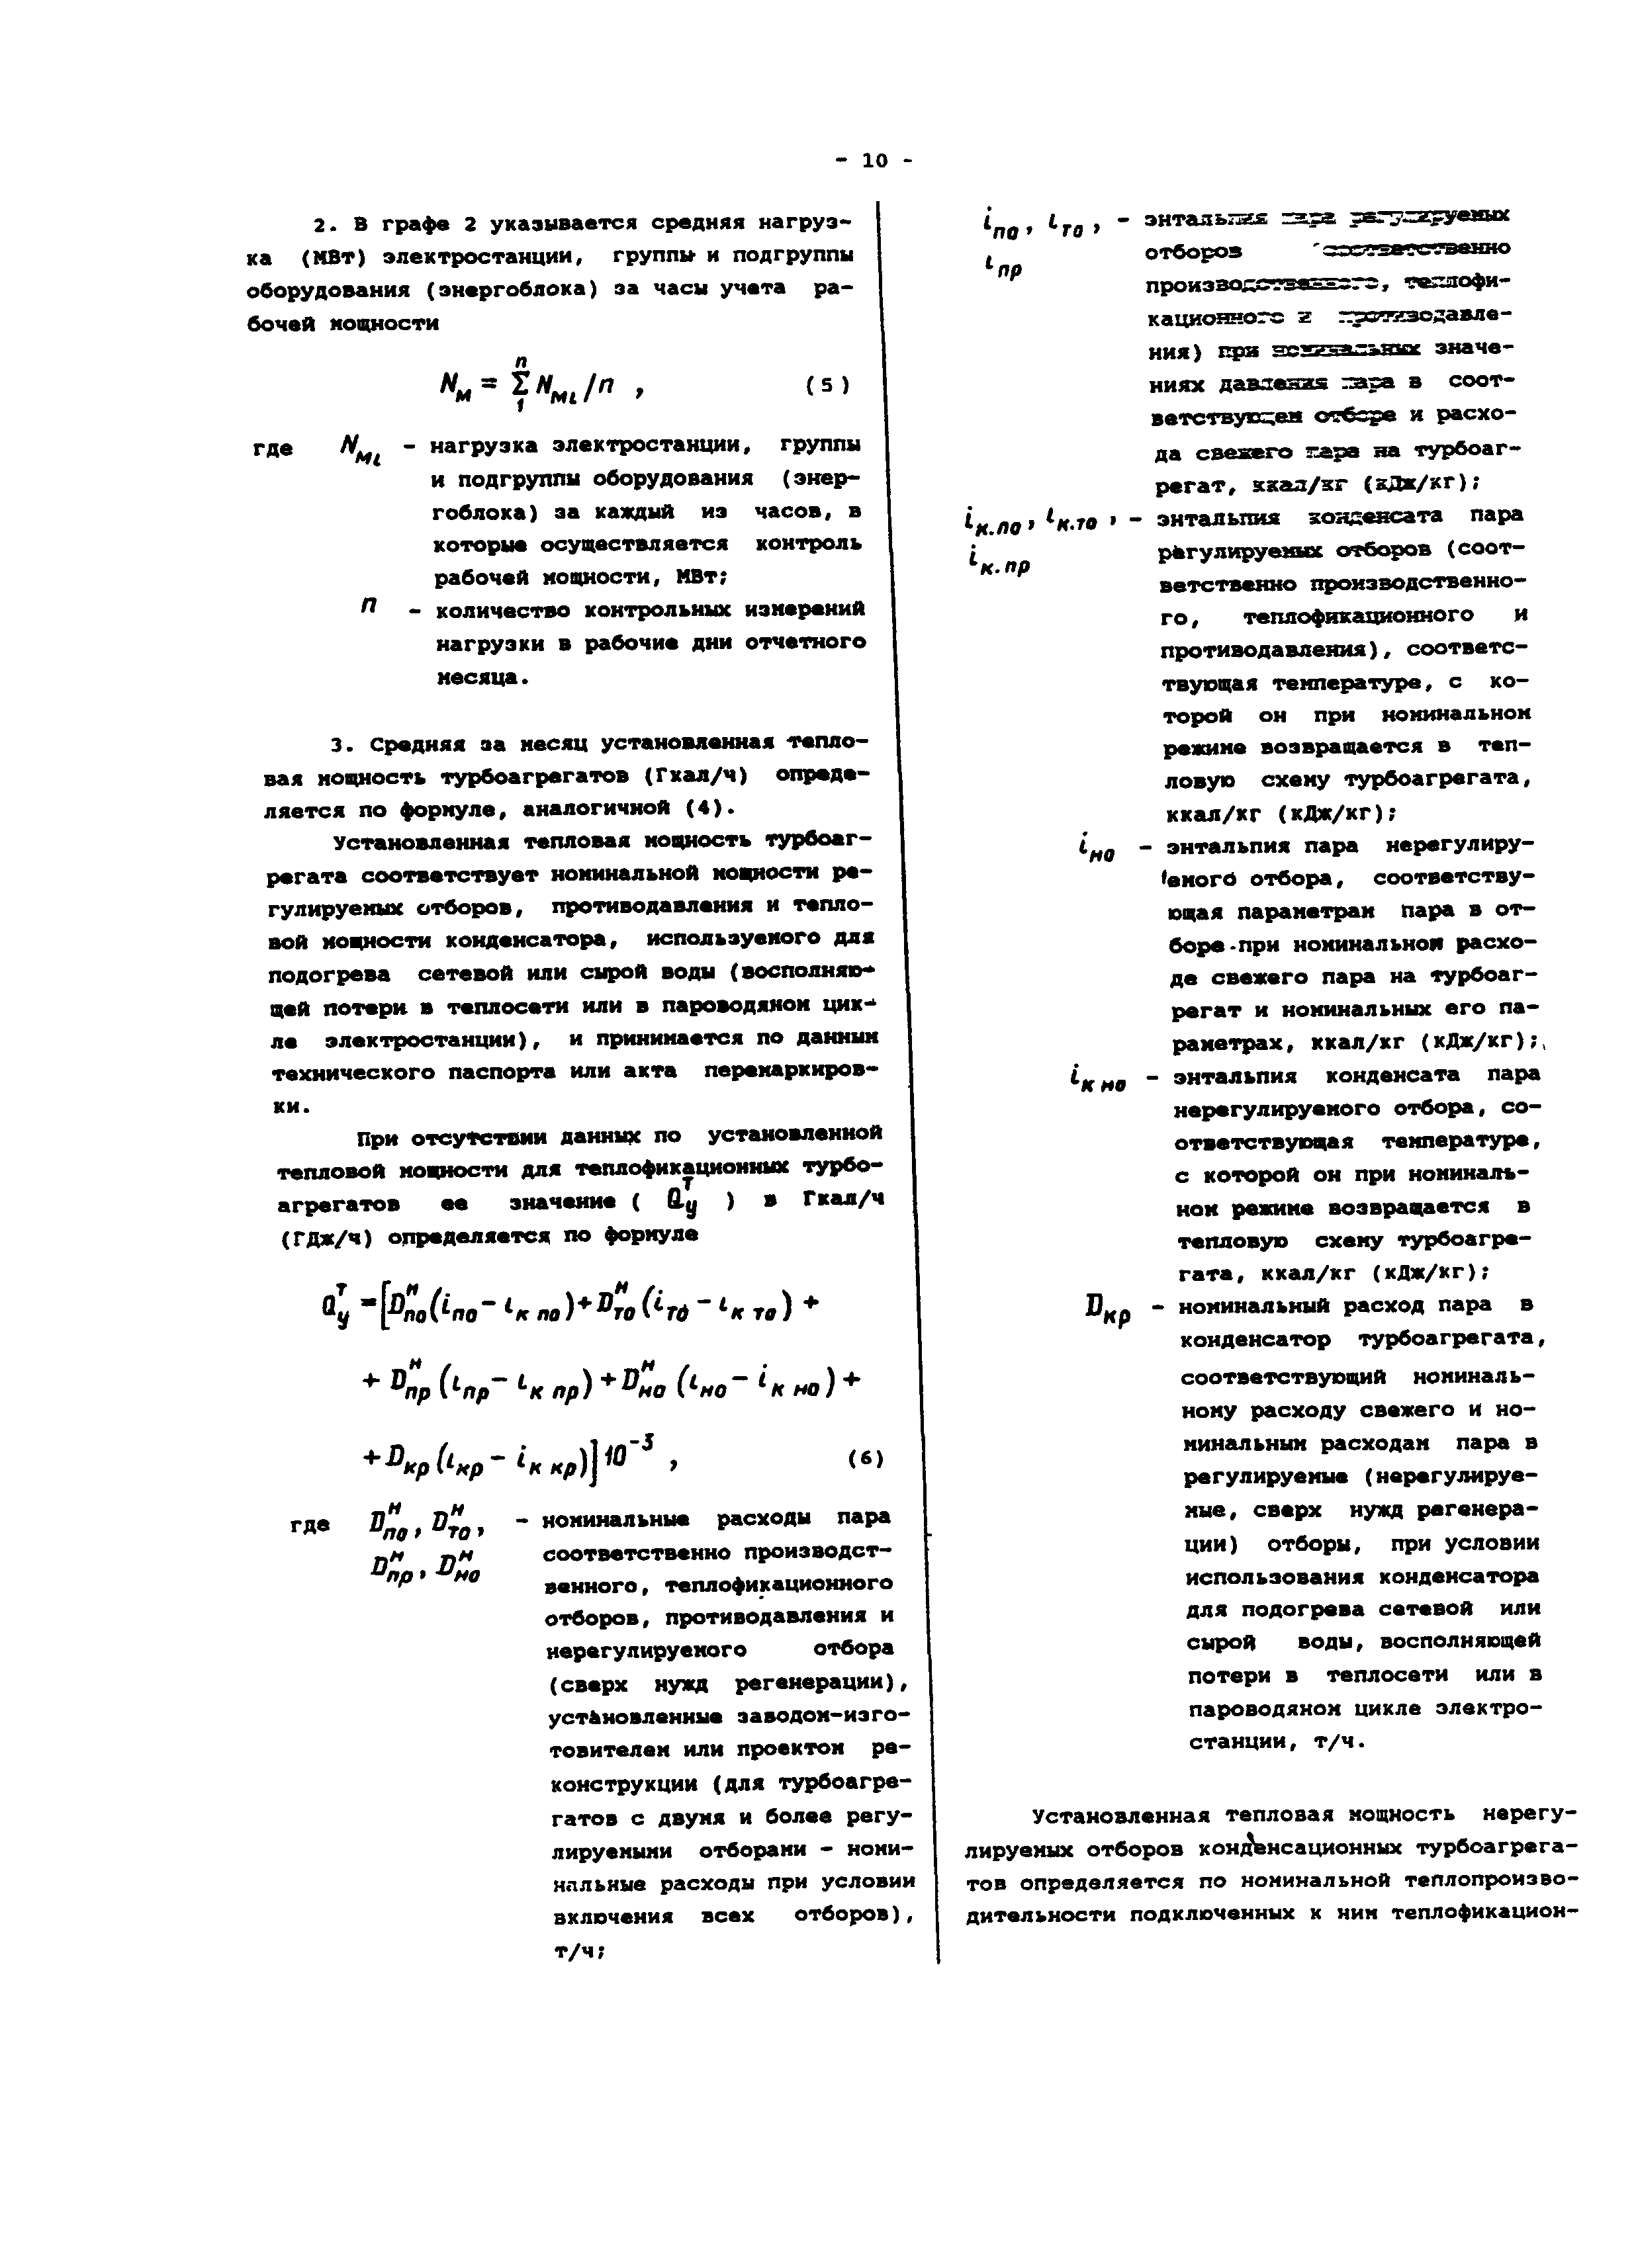  Методическое указание по теме Определение состава продуктов детонации и теплового эффекта взрыва по полуэмпирическому методу Г.А. Авакяна